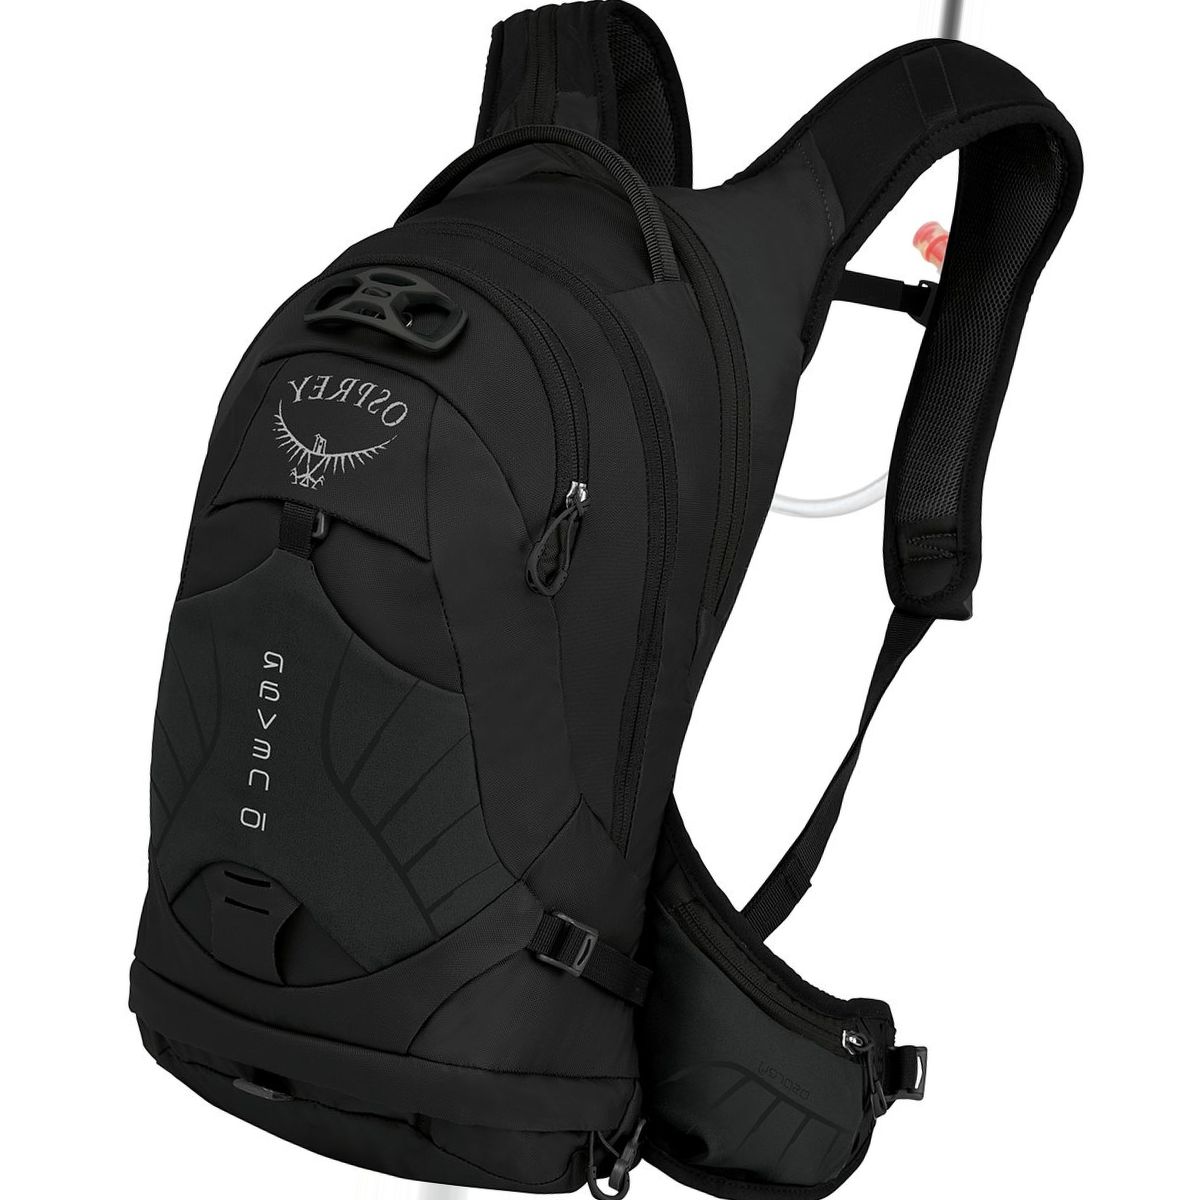 Osprey Packs Raven 10L Backpack - Women's